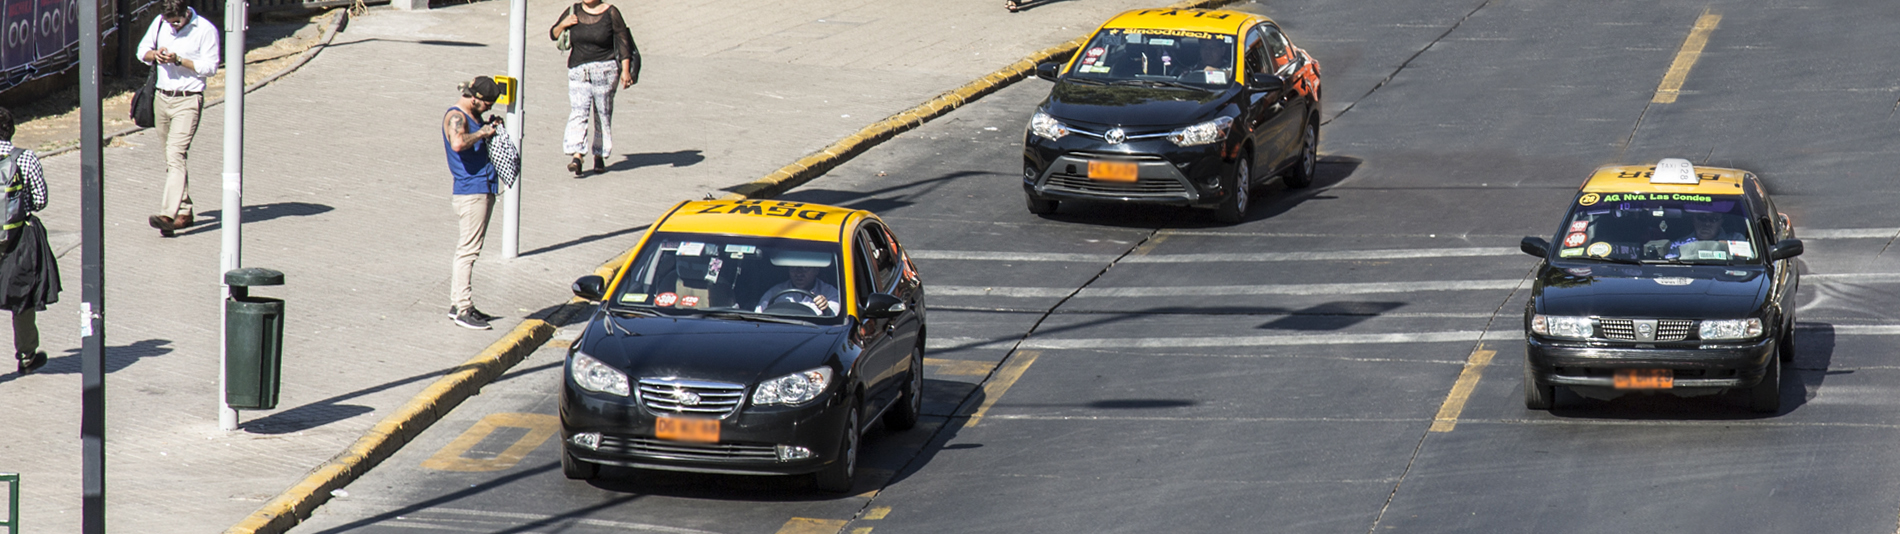 Taxis en Santiago